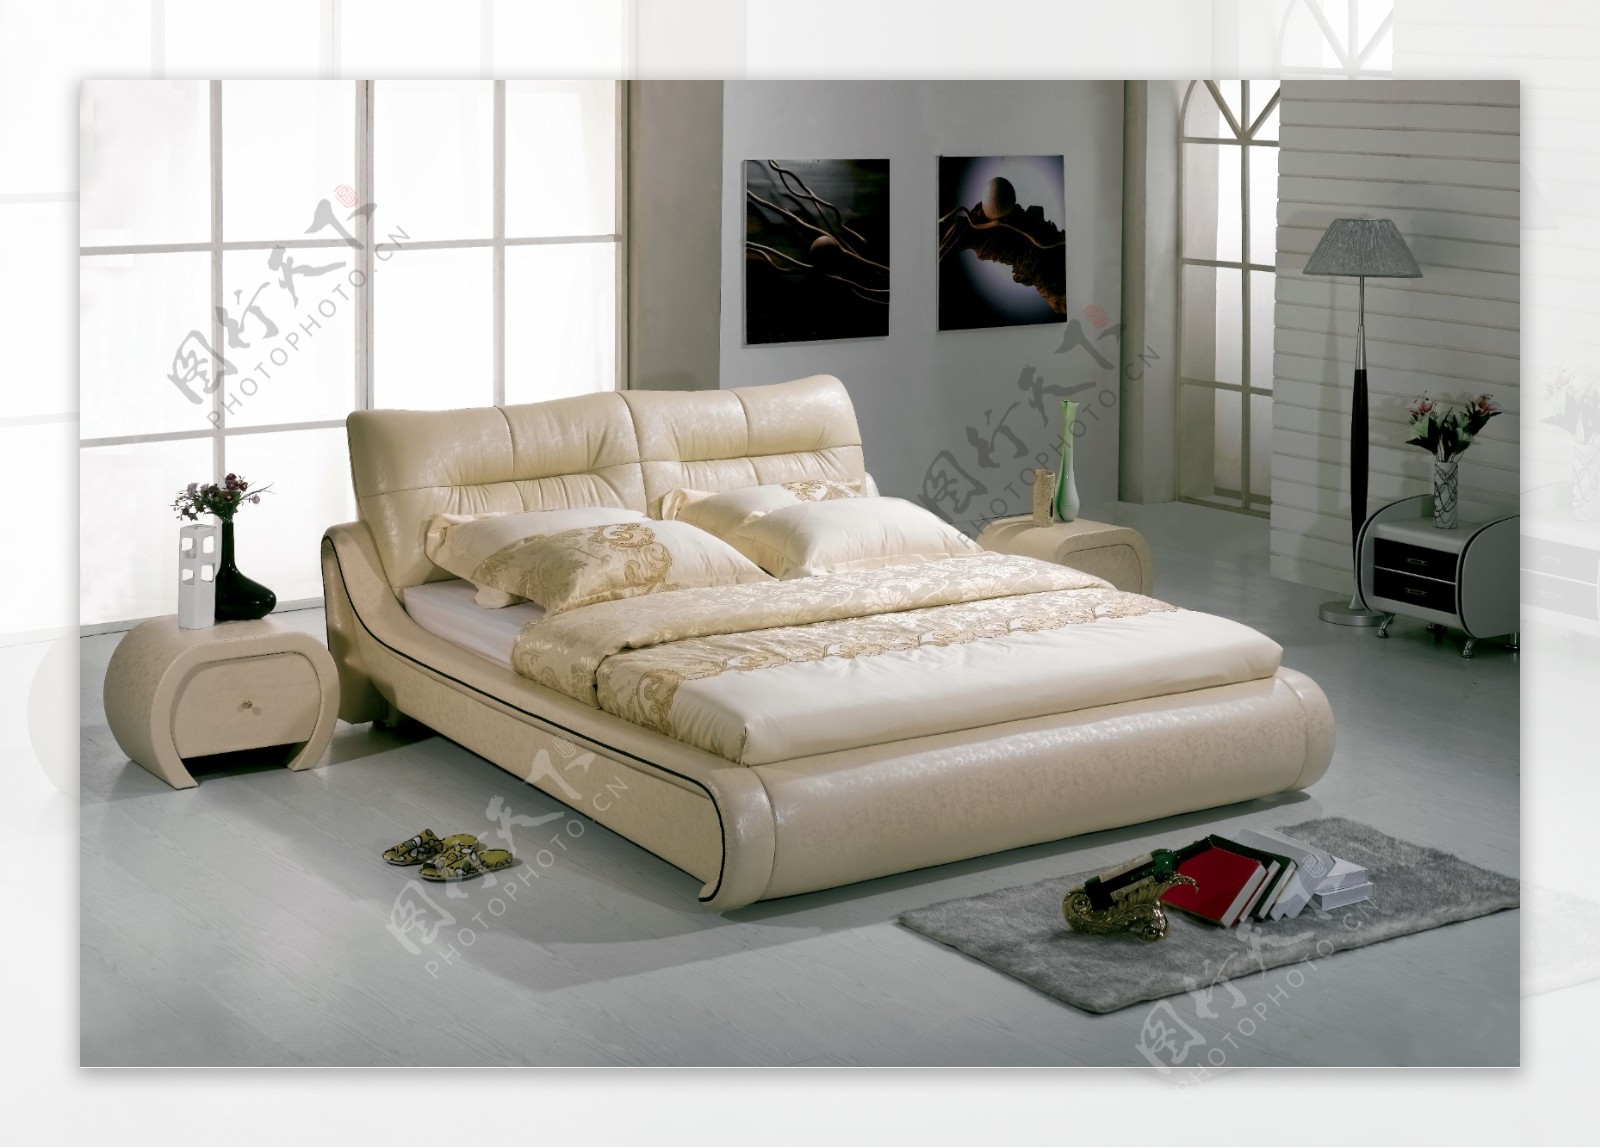 浪漫风格的卧室图片